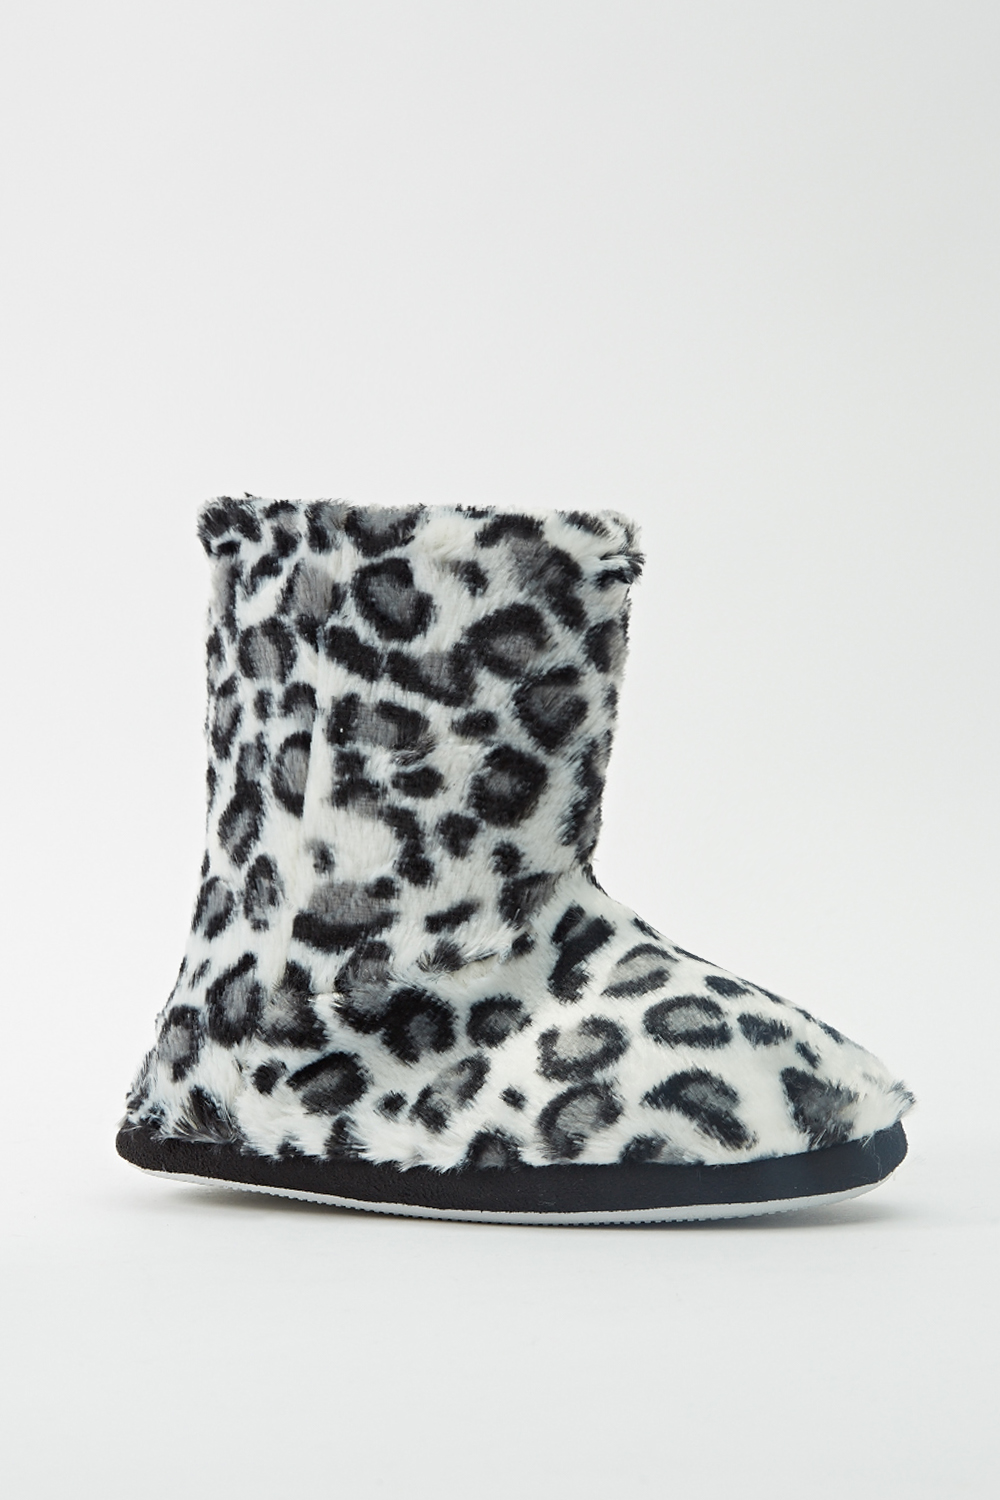 Animal Print Faux Fur Slipper Boots - Just $